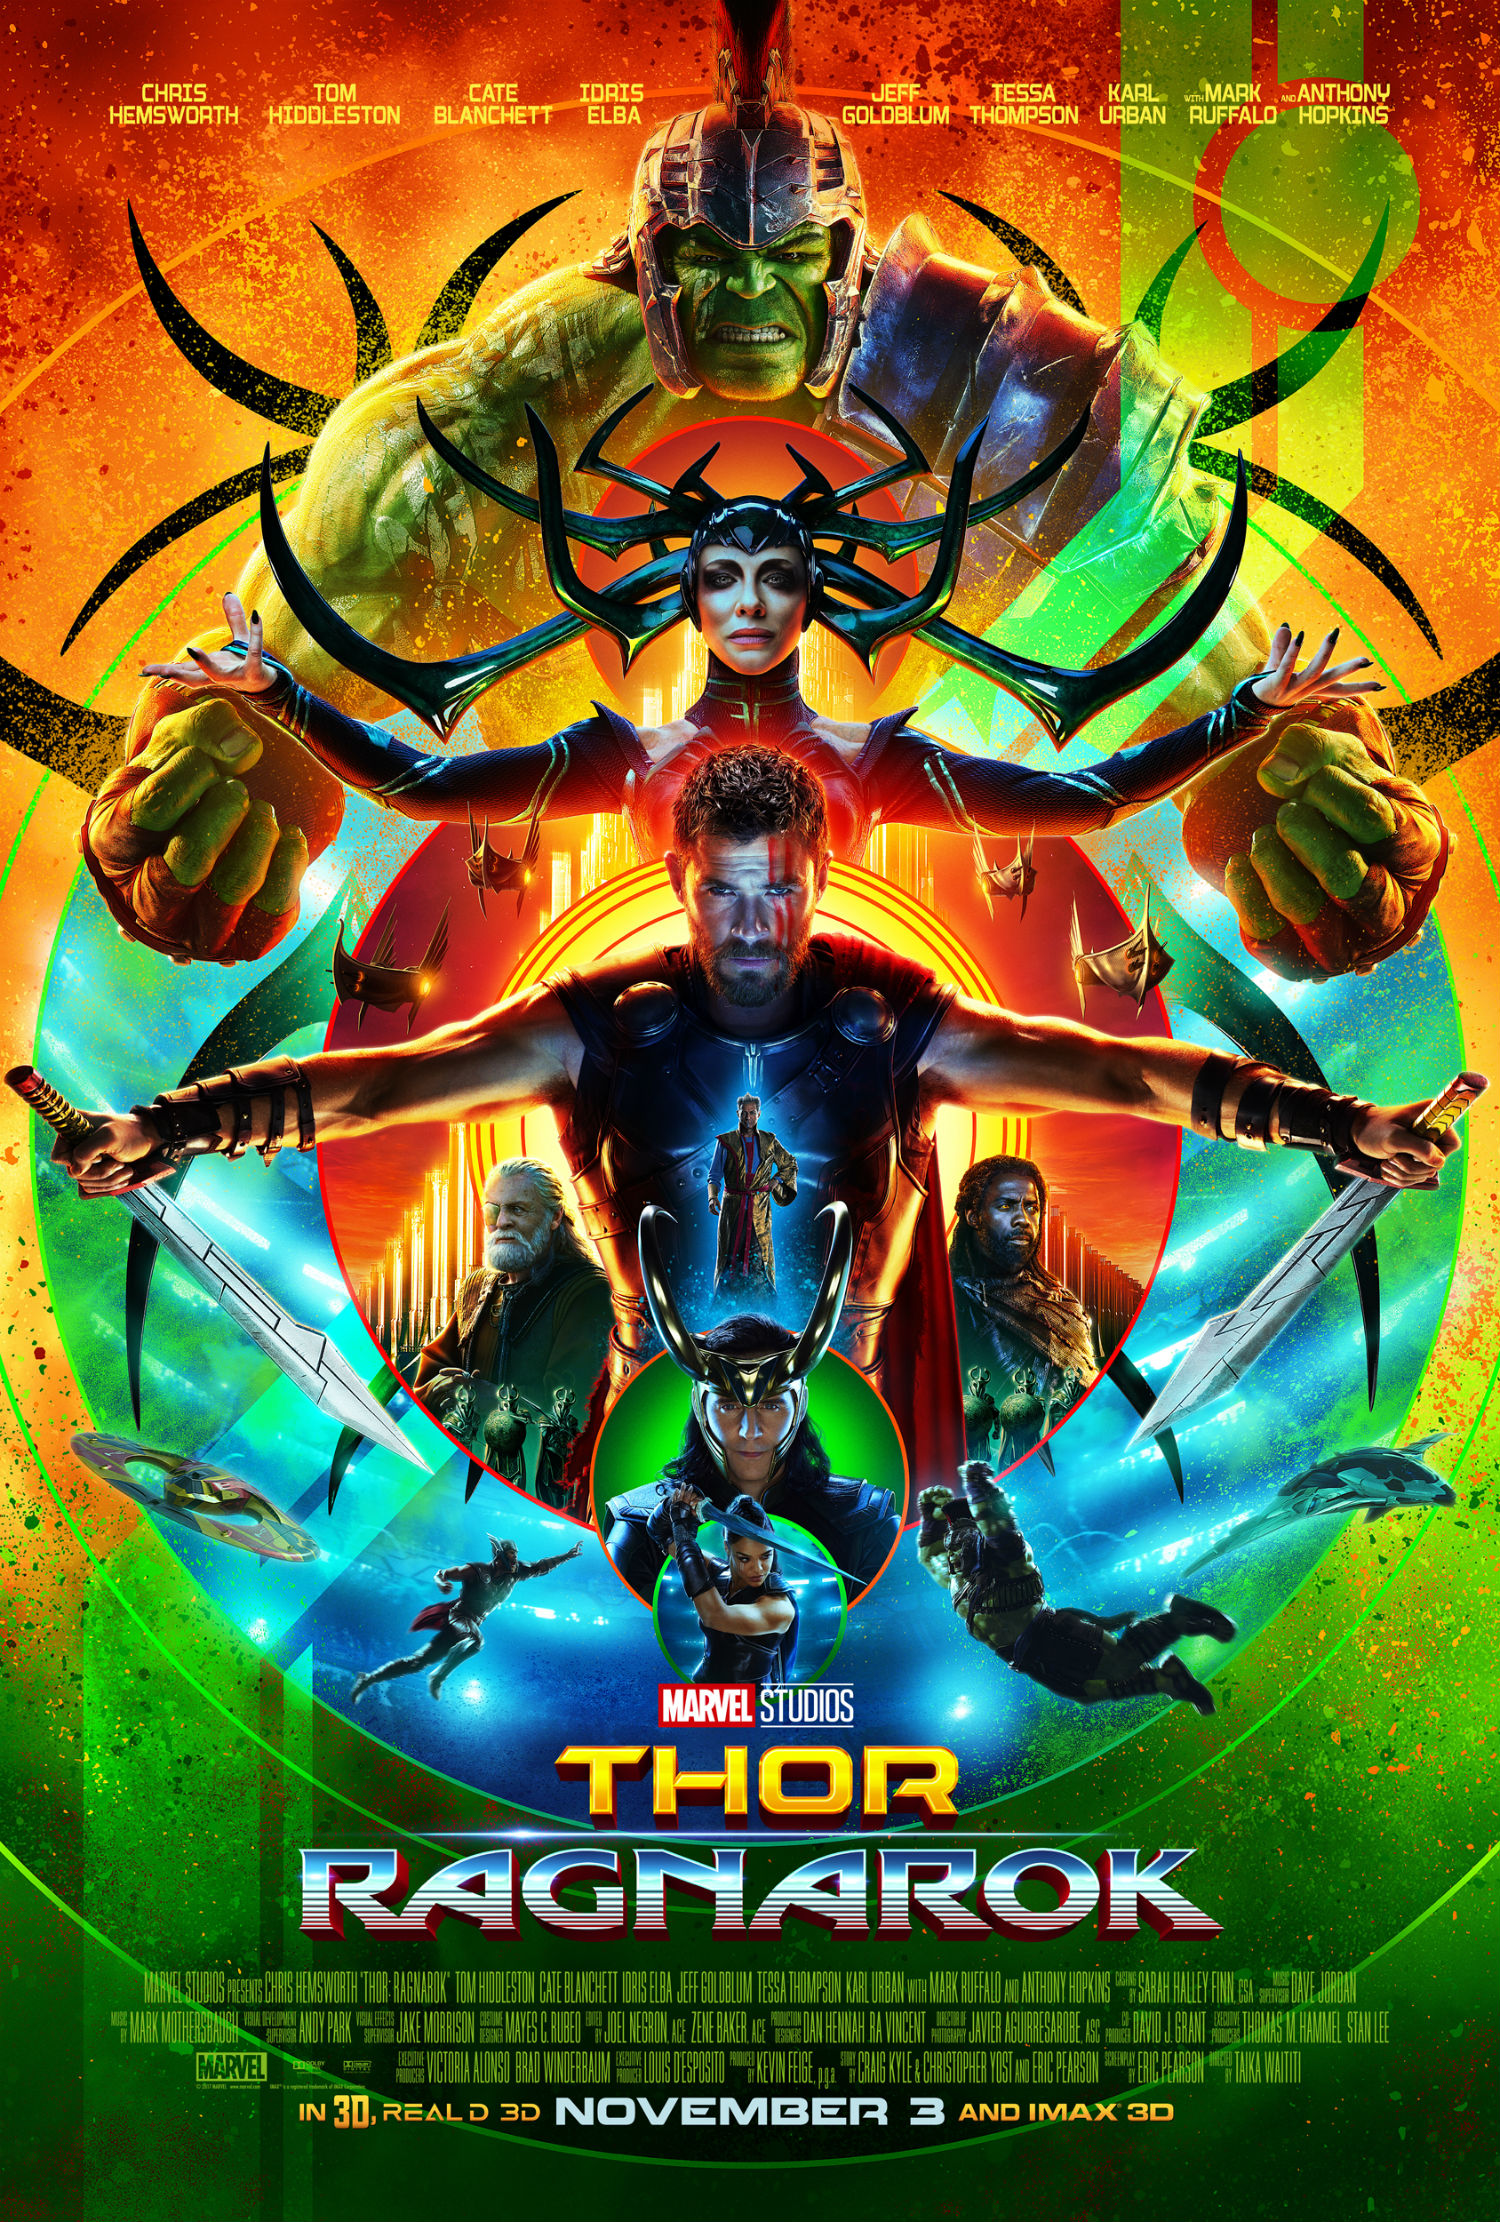 REVIEW: 'She-Hulk' Is Marvel Studios' '30 Rock' - Murphy's Multiverse